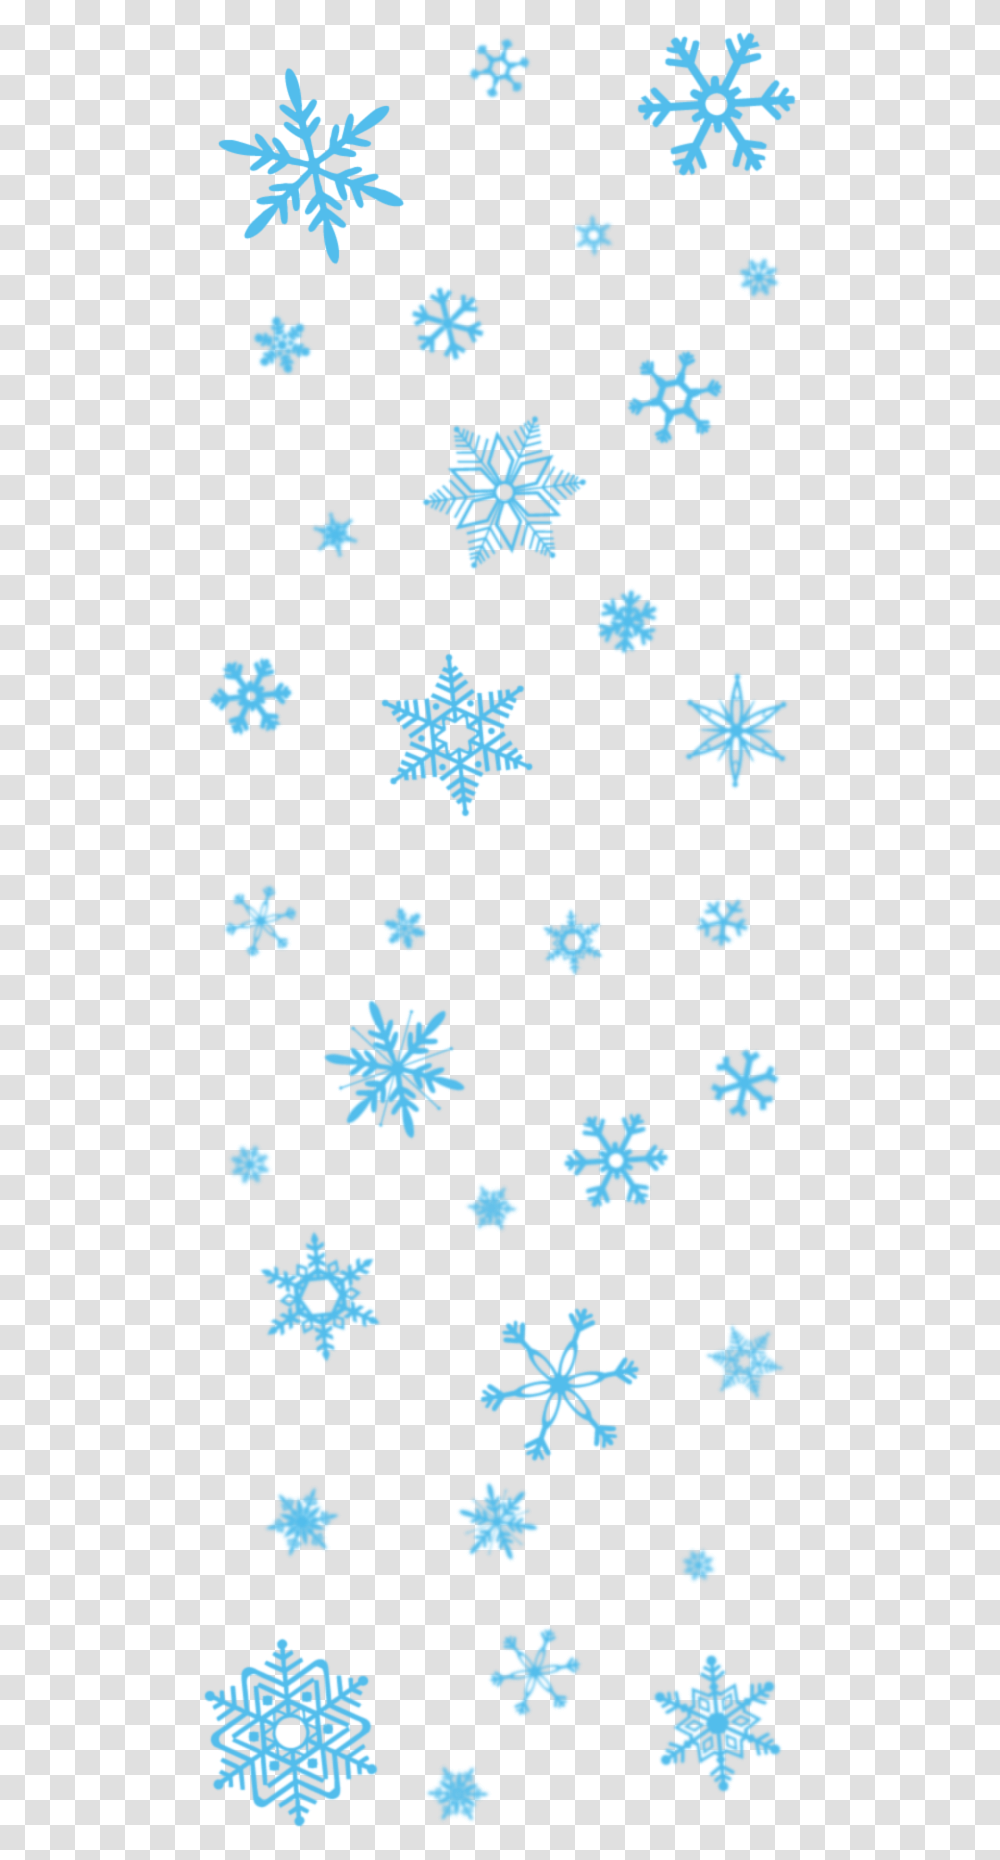 Frozen Snowflake Picture Copos De Nieve, Rug, Star Symbol Transparent Png